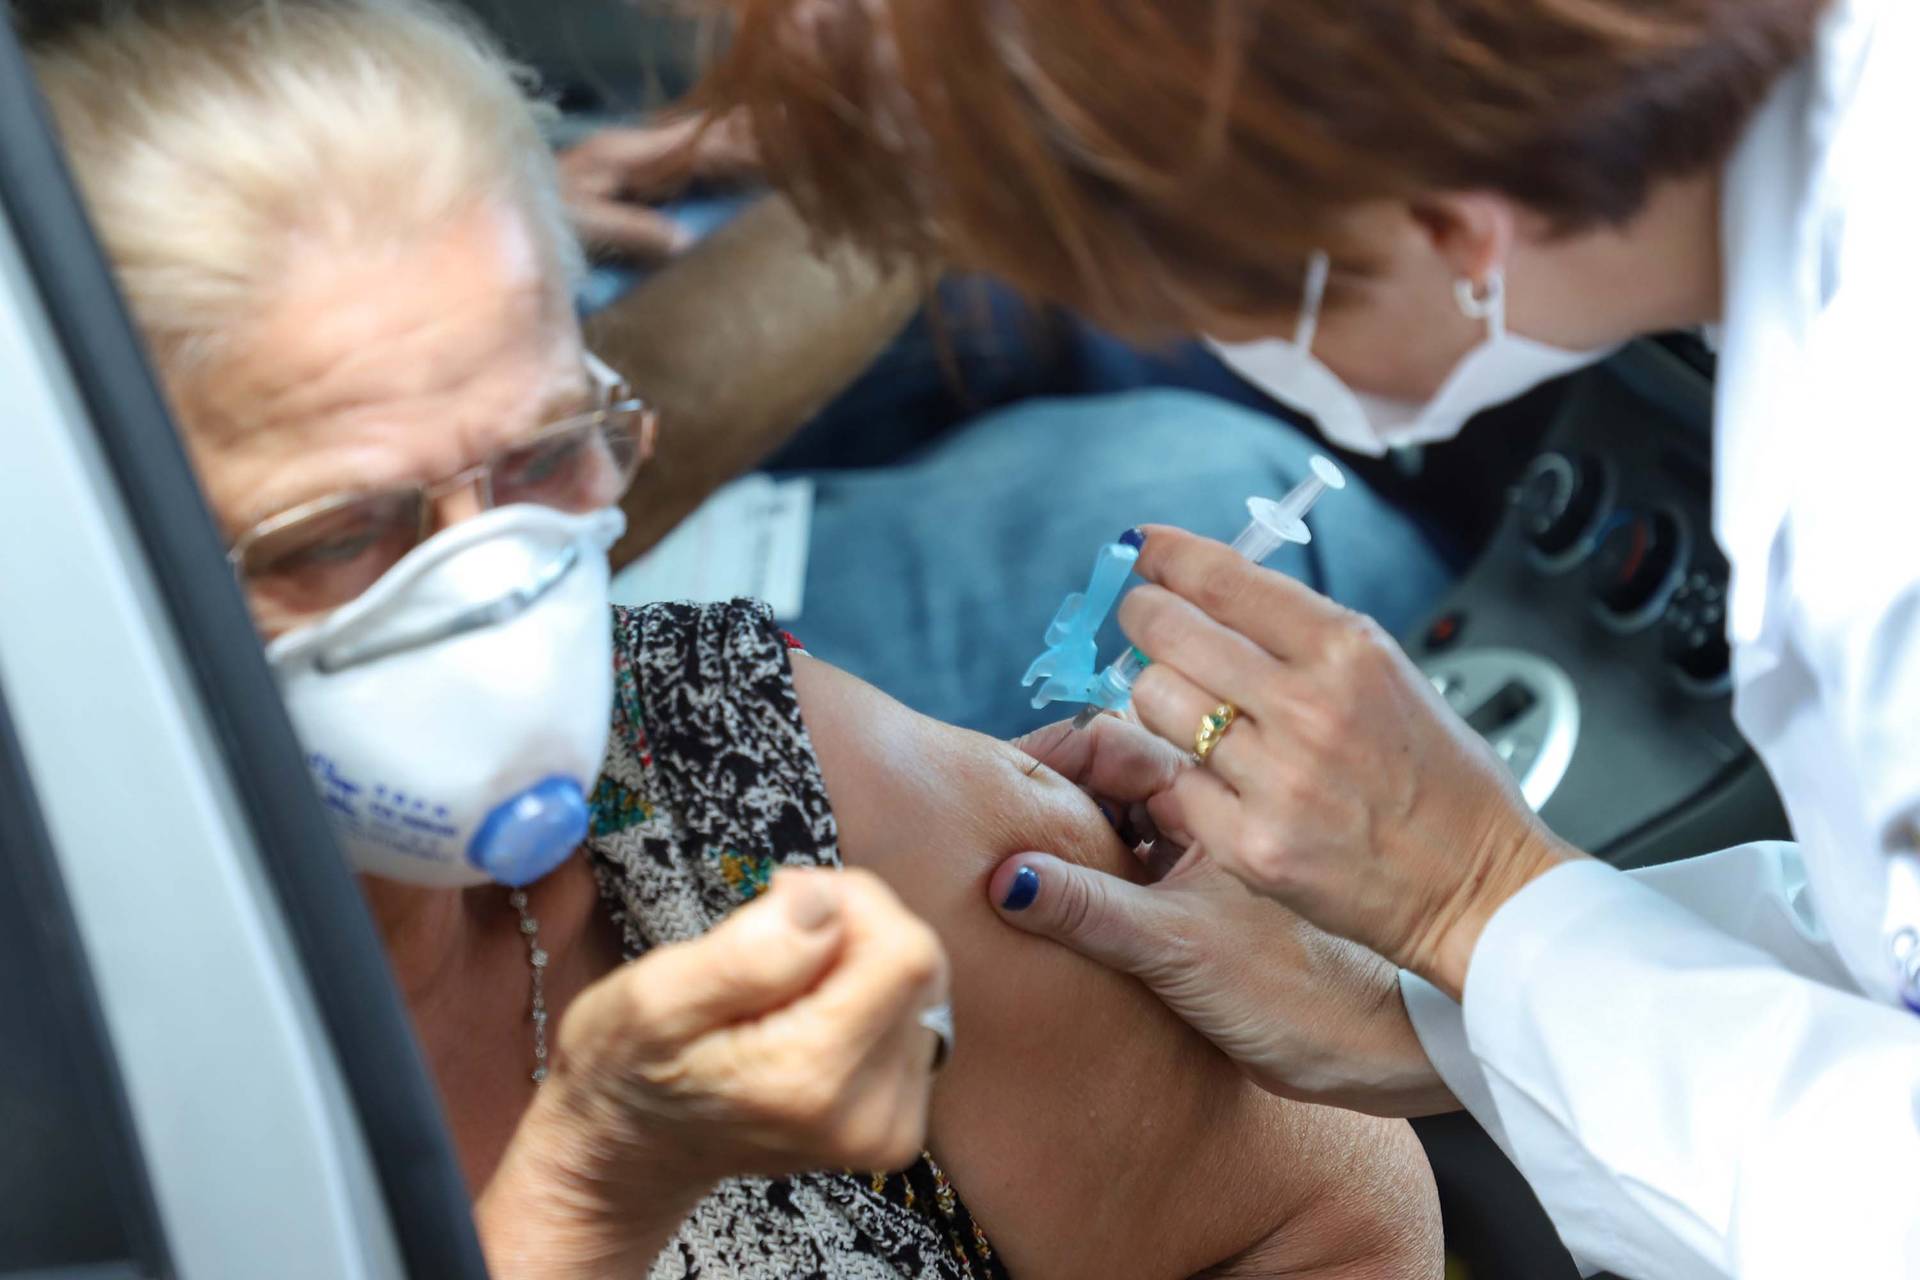 Paraná já vacinou mais de um milhão de idosos contra gripe